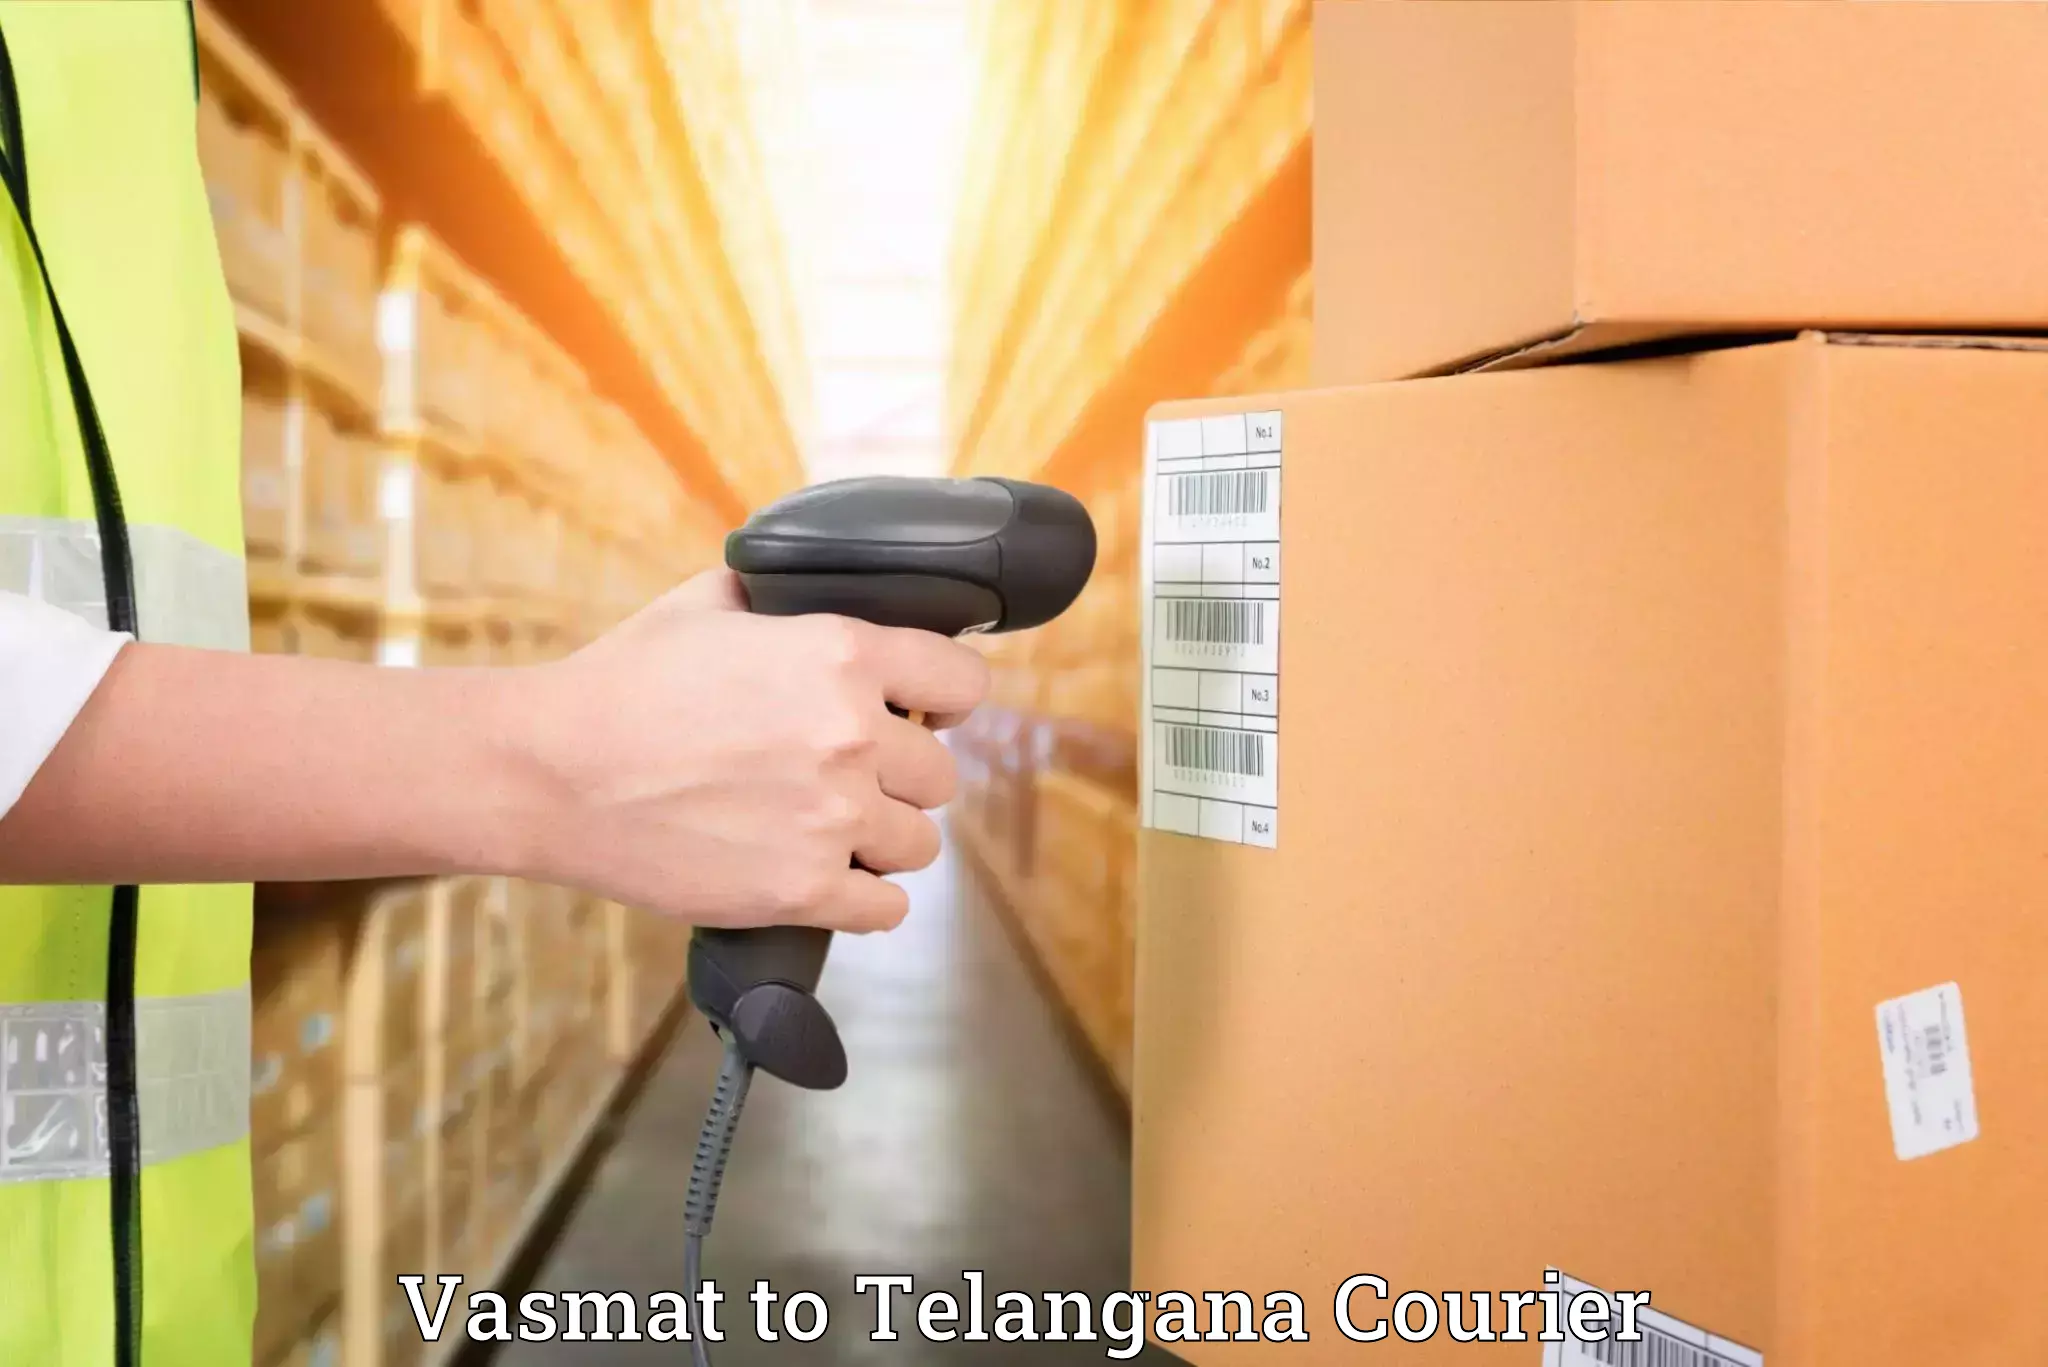 Furniture delivery service Vasmat to Manneguda